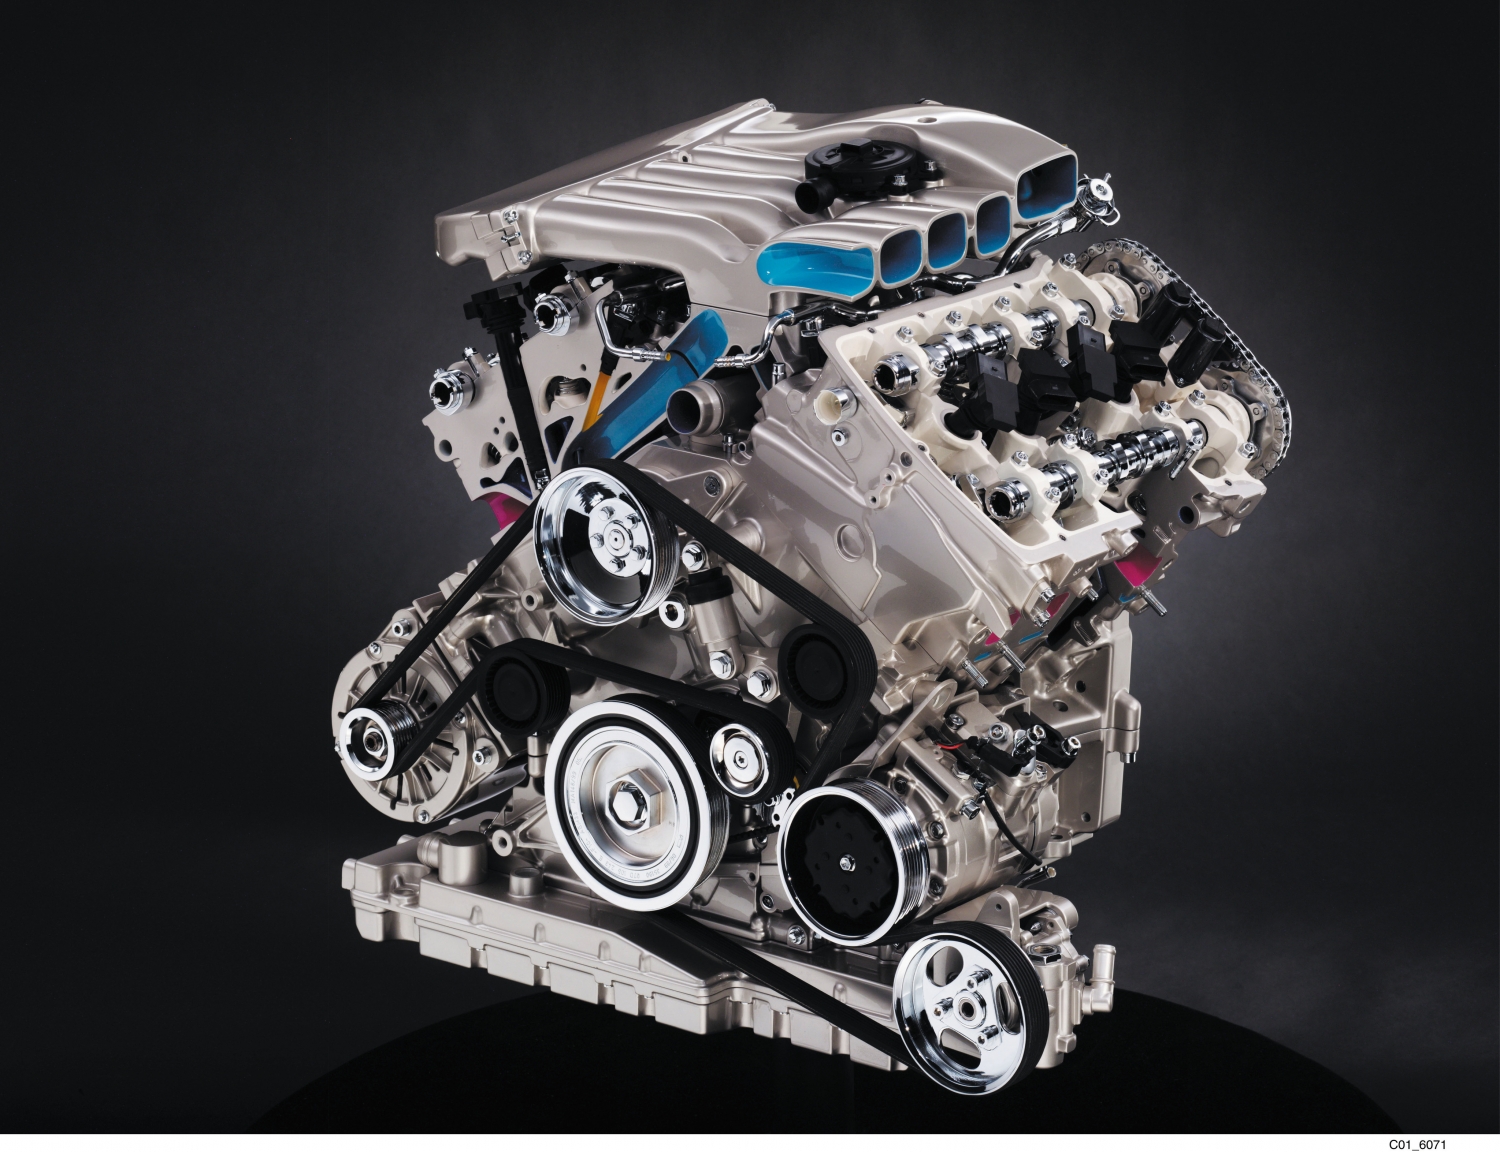 Volkswagen W8 eight-cylinder engine from W8 Passat